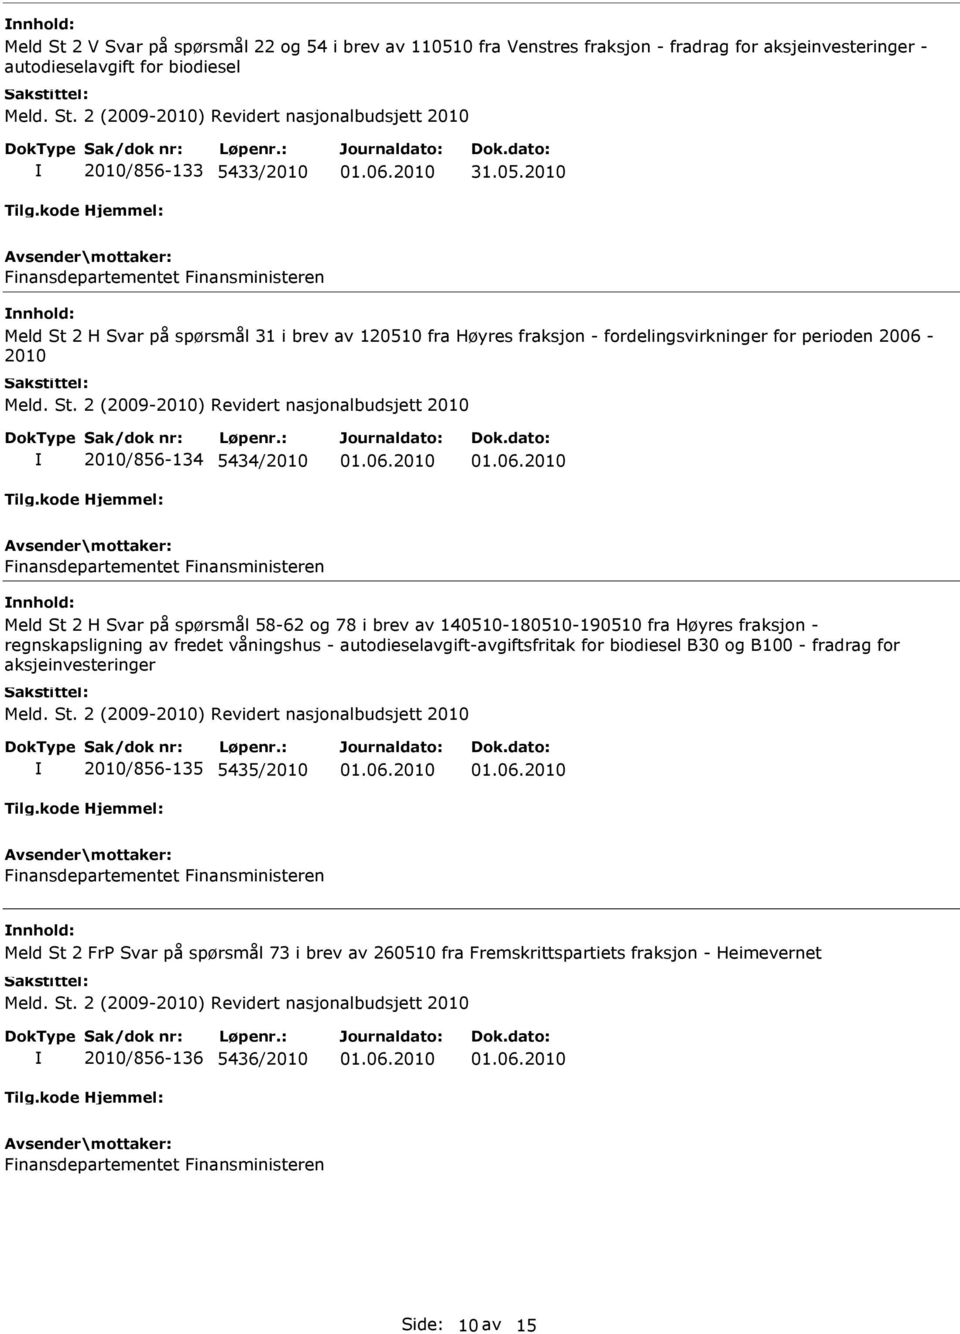 78 i brev av 140510-180510-190510 fra Høyres fraksjon - regnskapsligning av fredet våningshus - autodieselavgift-avgiftsfritak for biodiesel B30 og B100 - fradrag for